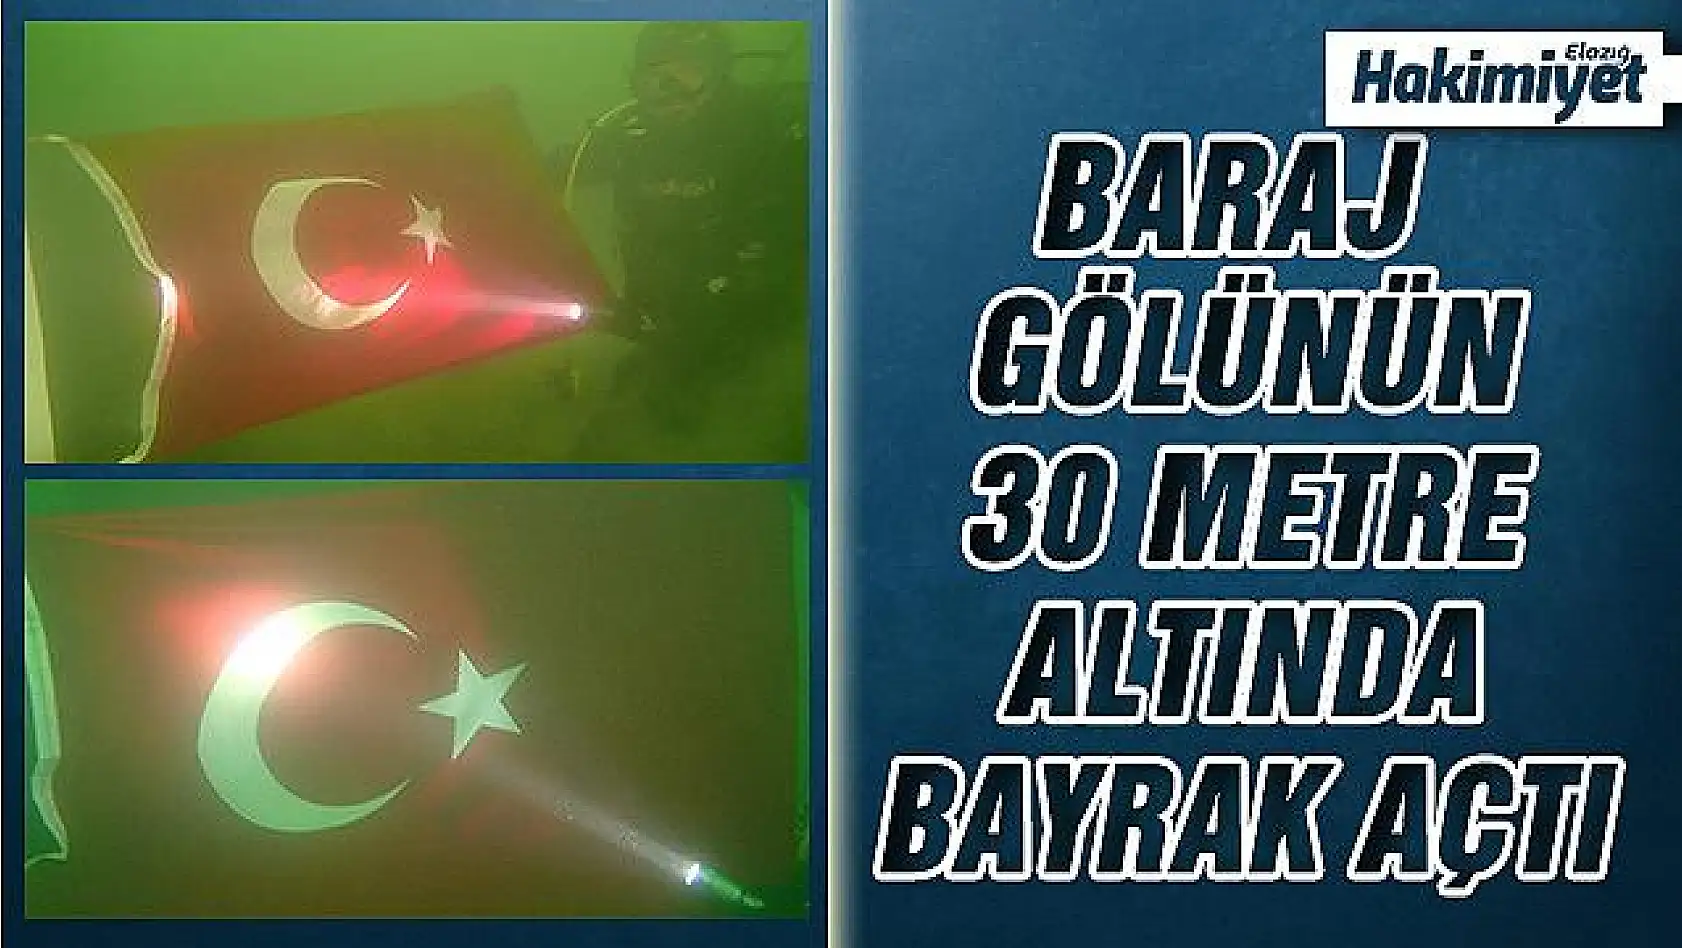 Dalgıçlar, baraj gölünün 30 metre altında Türk bayrağı açtı